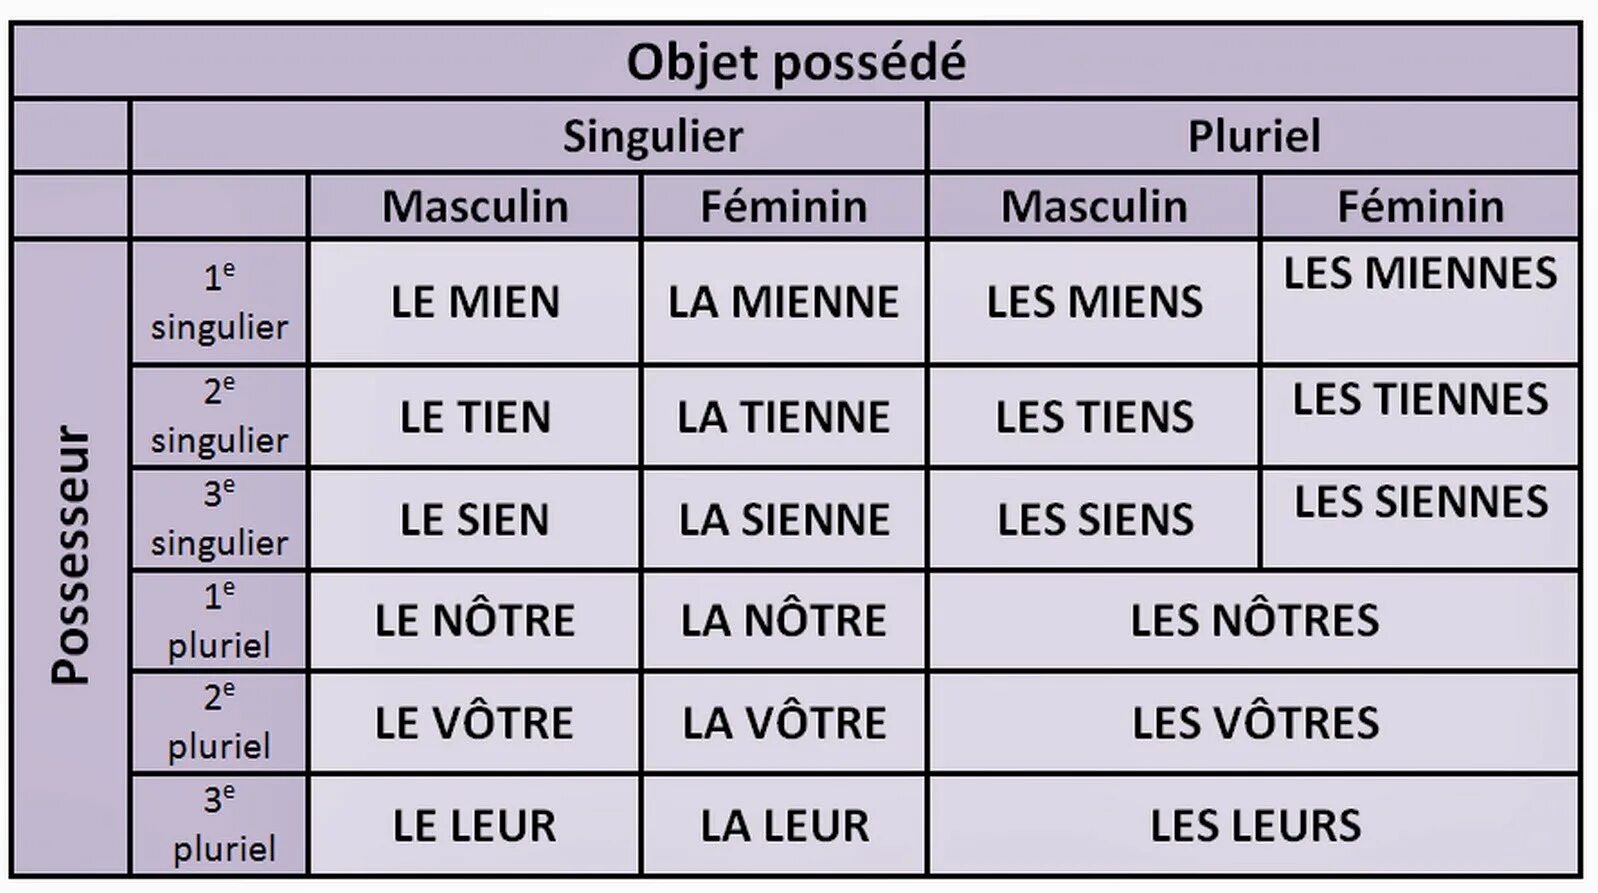 Притяжательные местоимения во французском языке таблица. Притяжательные местоимения французский таблица. Les pronoms possessifs во французском. Местоимения притяжательные в Фран. Шорты падежи множественного числа